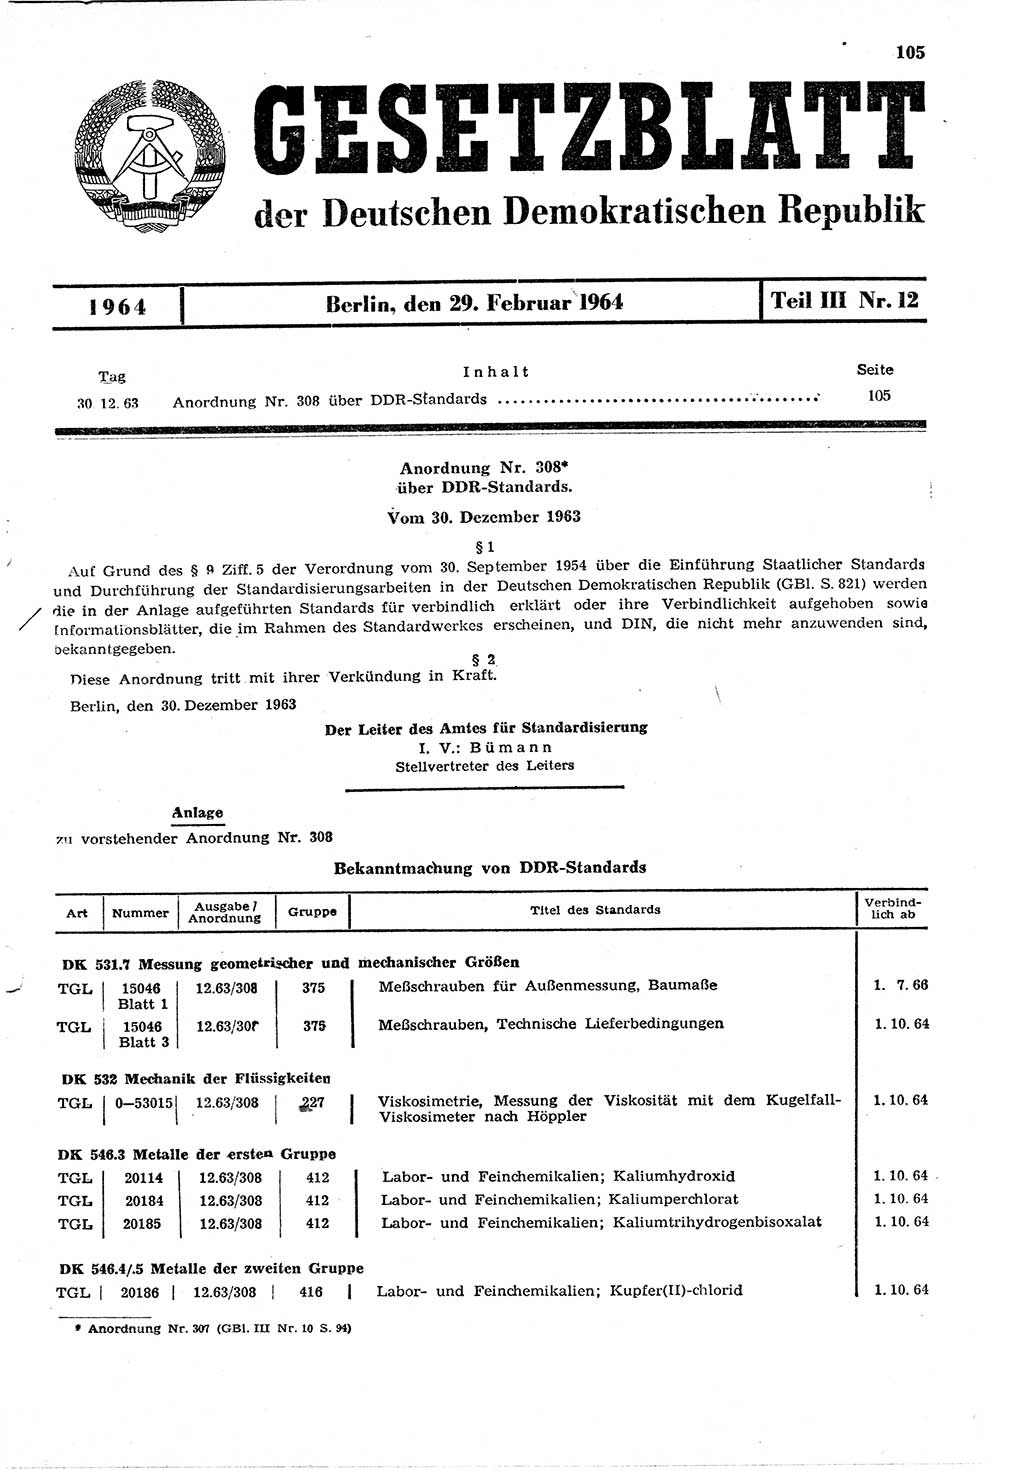 Gesetzblatt (GBl.) der Deutschen Demokratischen Republik (DDR) Teil ⅠⅠⅠ 1964, Seite 105 (GBl. DDR ⅠⅠⅠ 1964, S. 105)